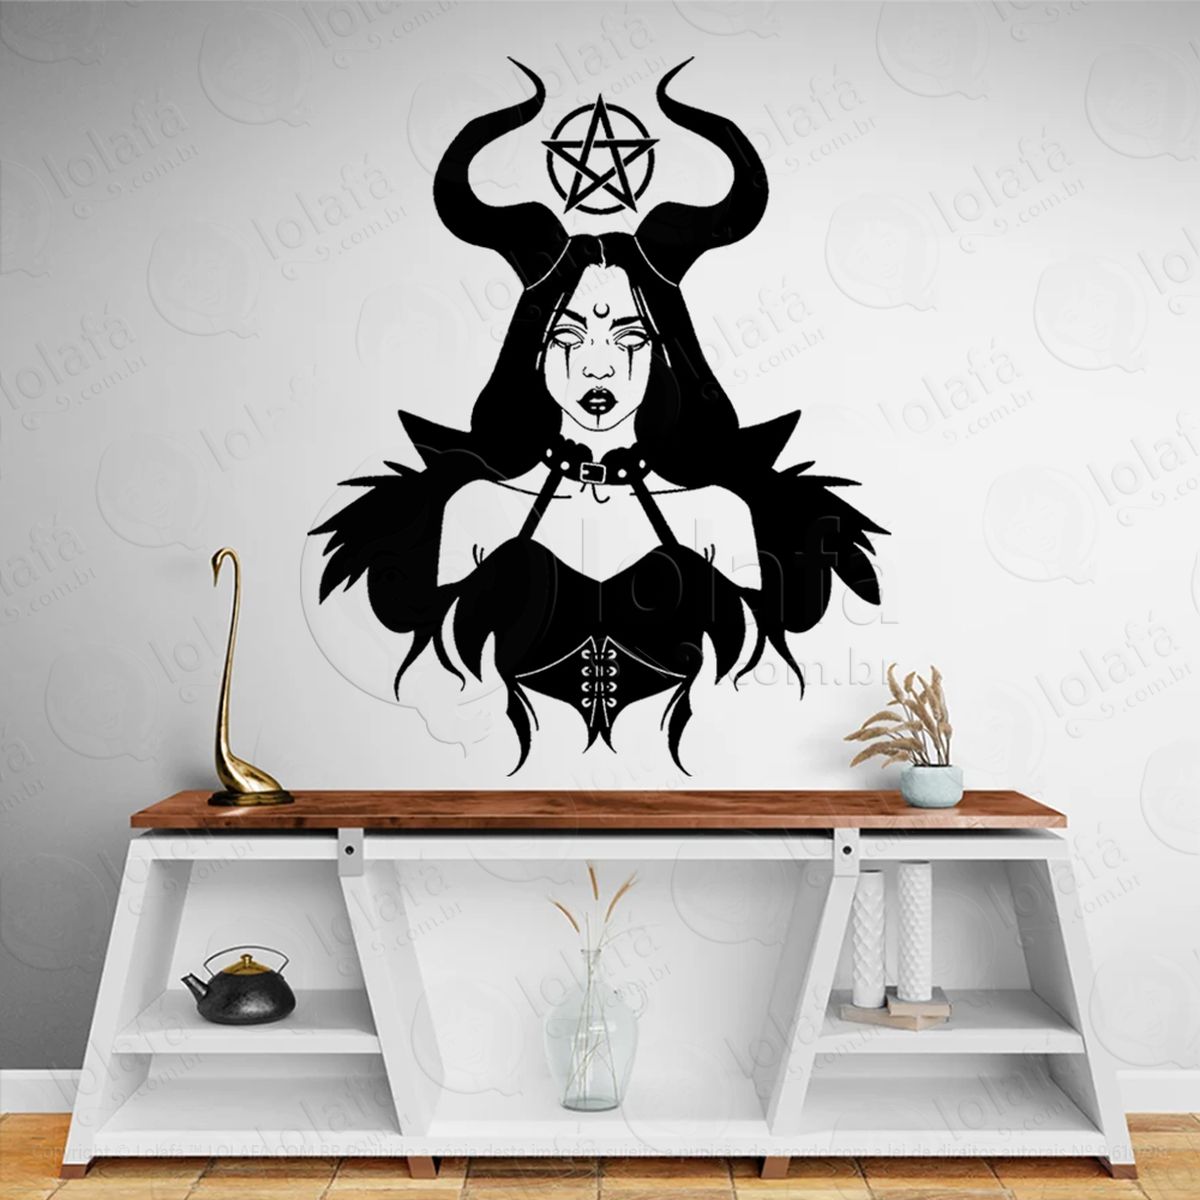 bruxaria pentagrama mulher bruxa altar adesivo de parede decorativo para casa, sala, quarto, vidro e altar ocultista - mod:285